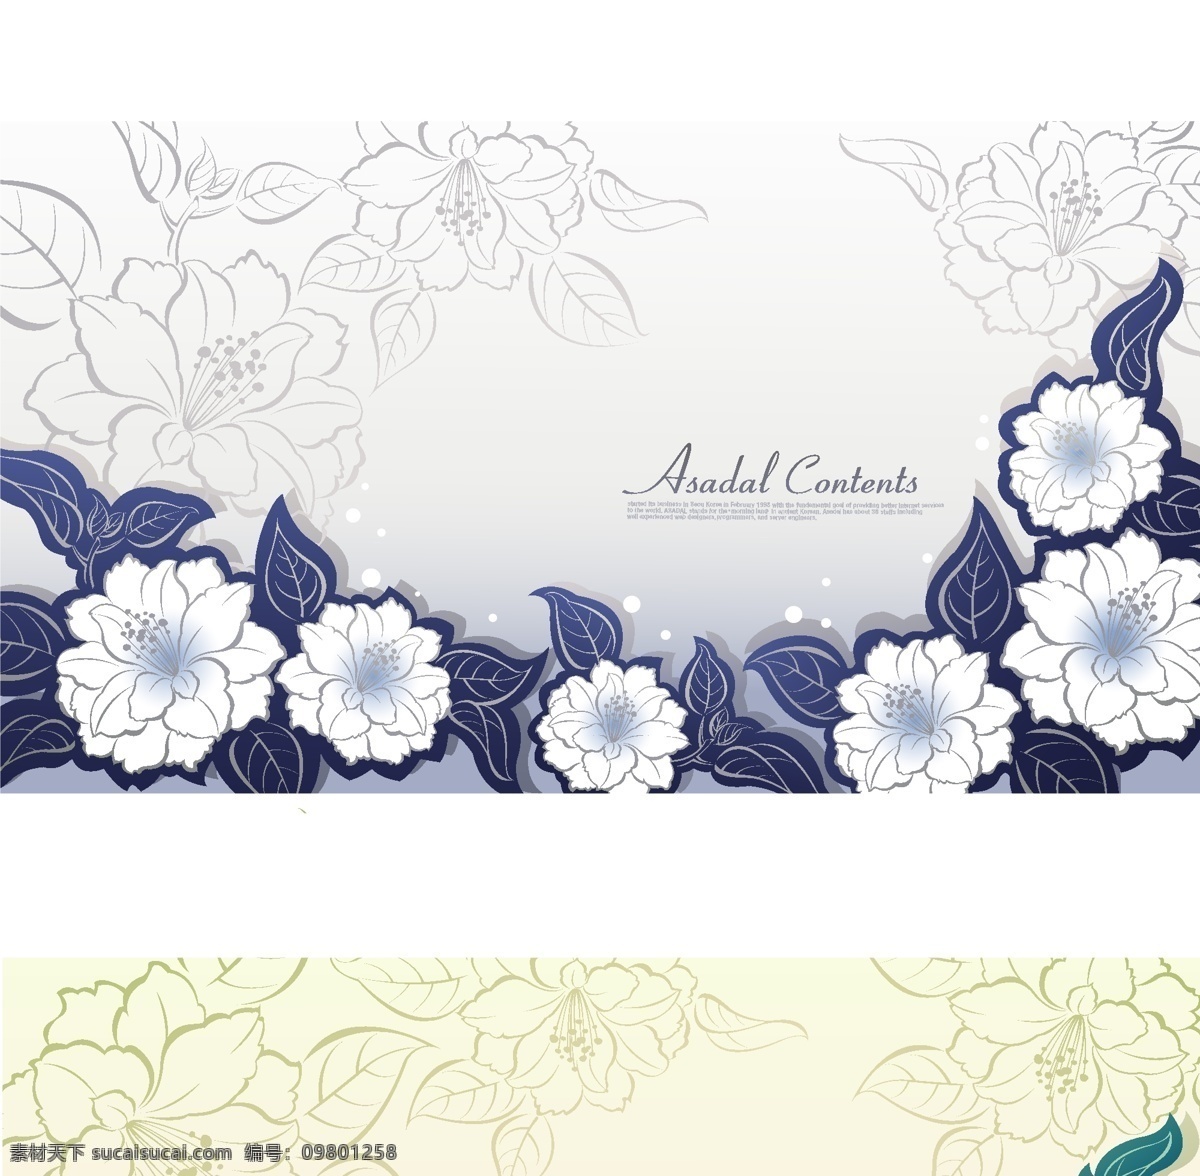 矢量素材 背景 花纹 时尚 装饰 传统 ai格式 花朵 花卉 牡丹花